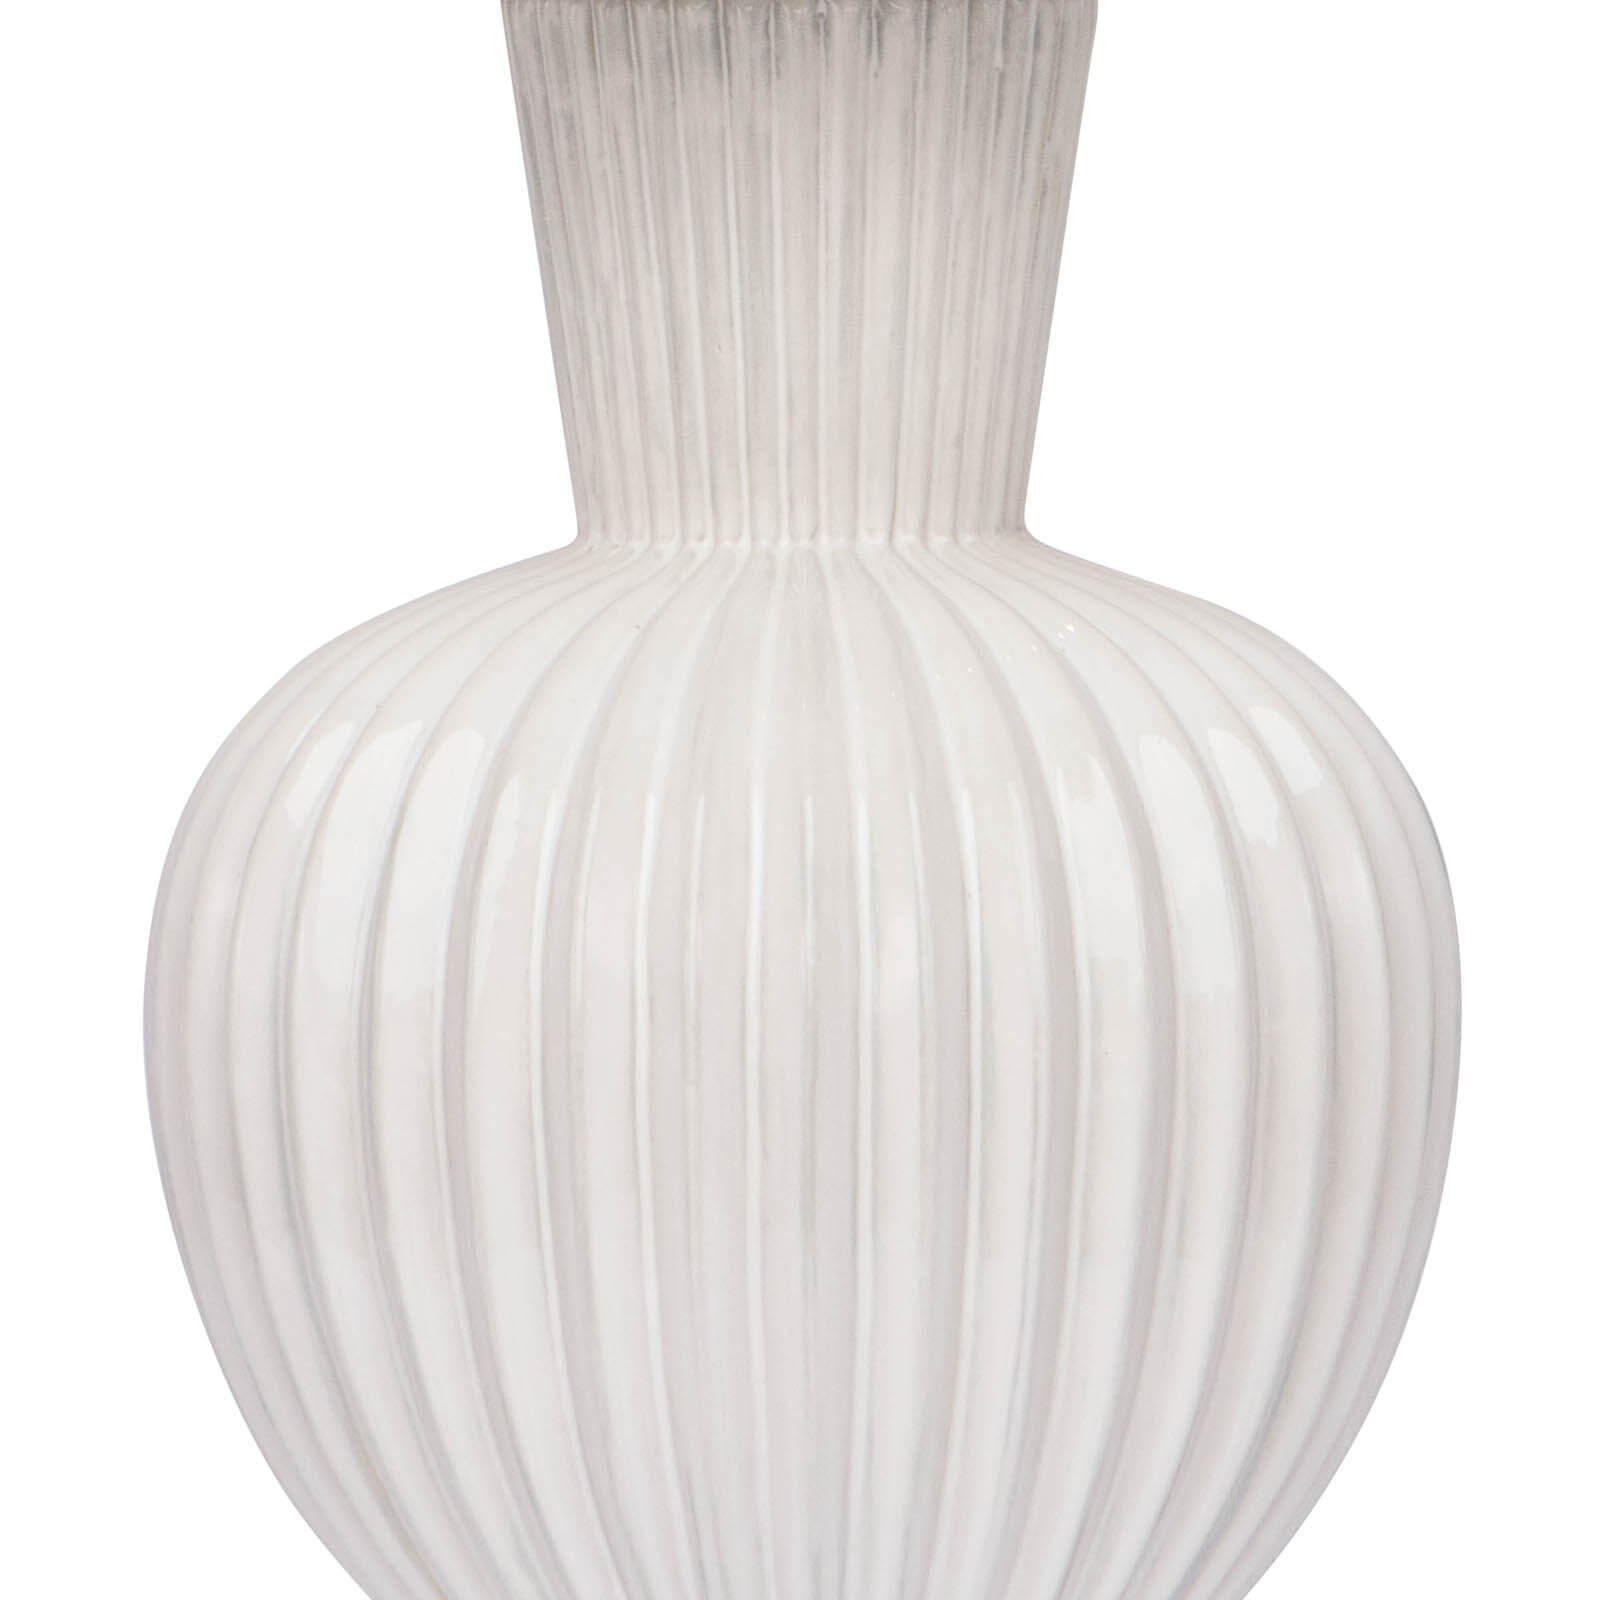 Madrid Ceramic Table Lamp in White by Regina Andrew